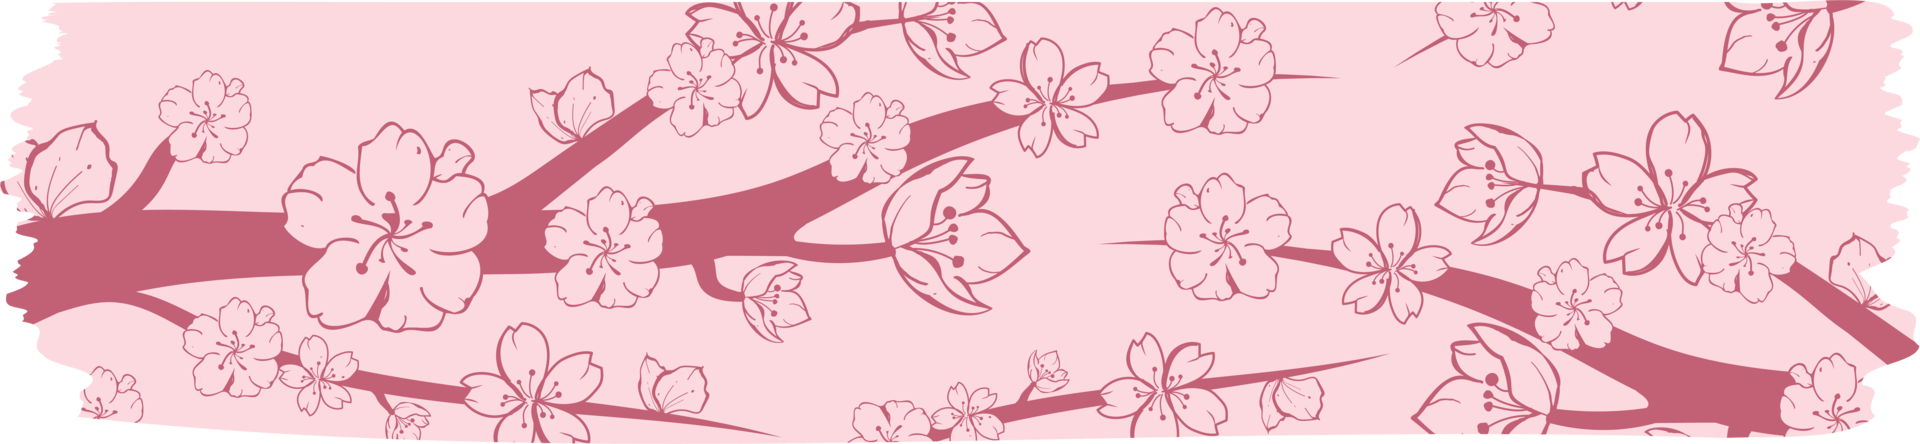 washi tape com sakura ou padrão de flor de cerejeira, washi tape sakura design ilustração png